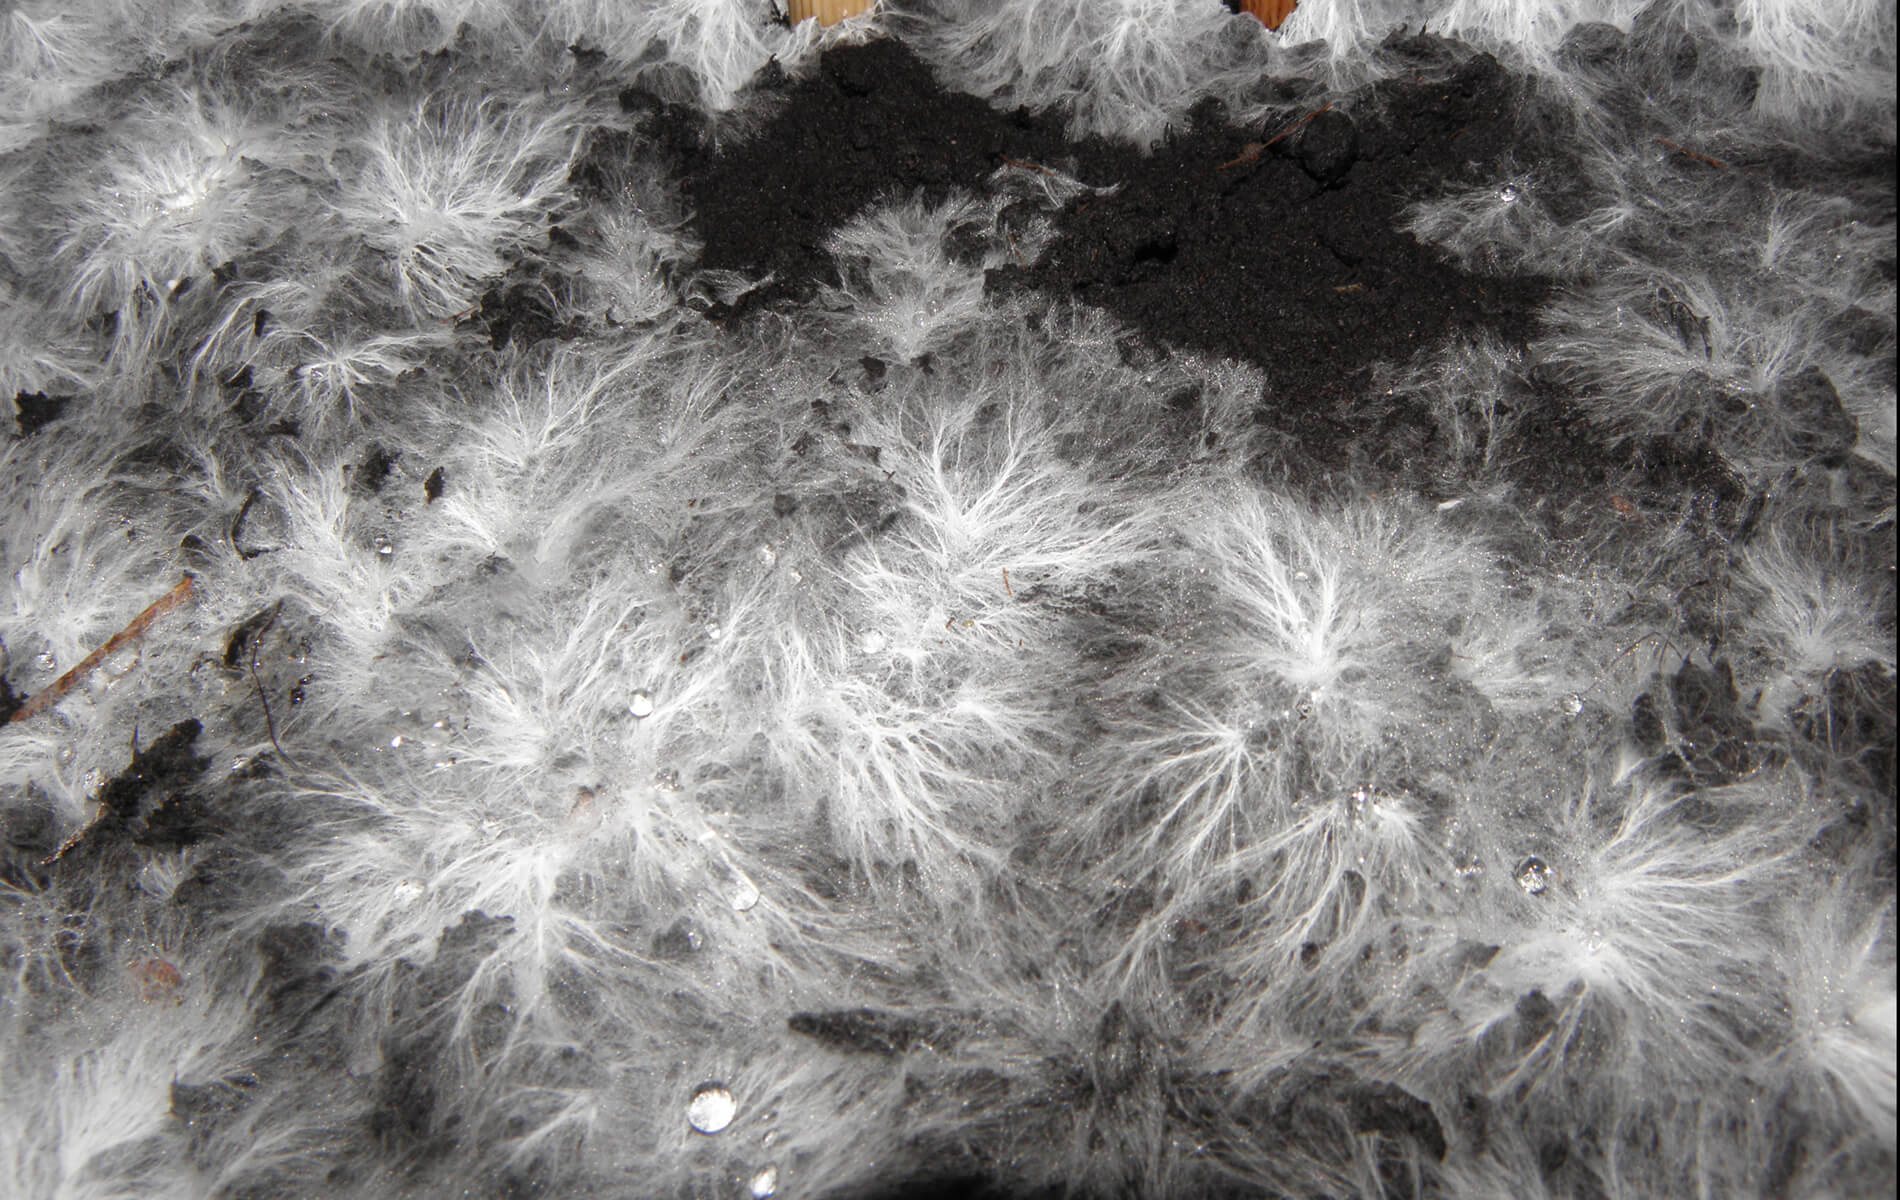 Biomaterial Experiment: Mycelium